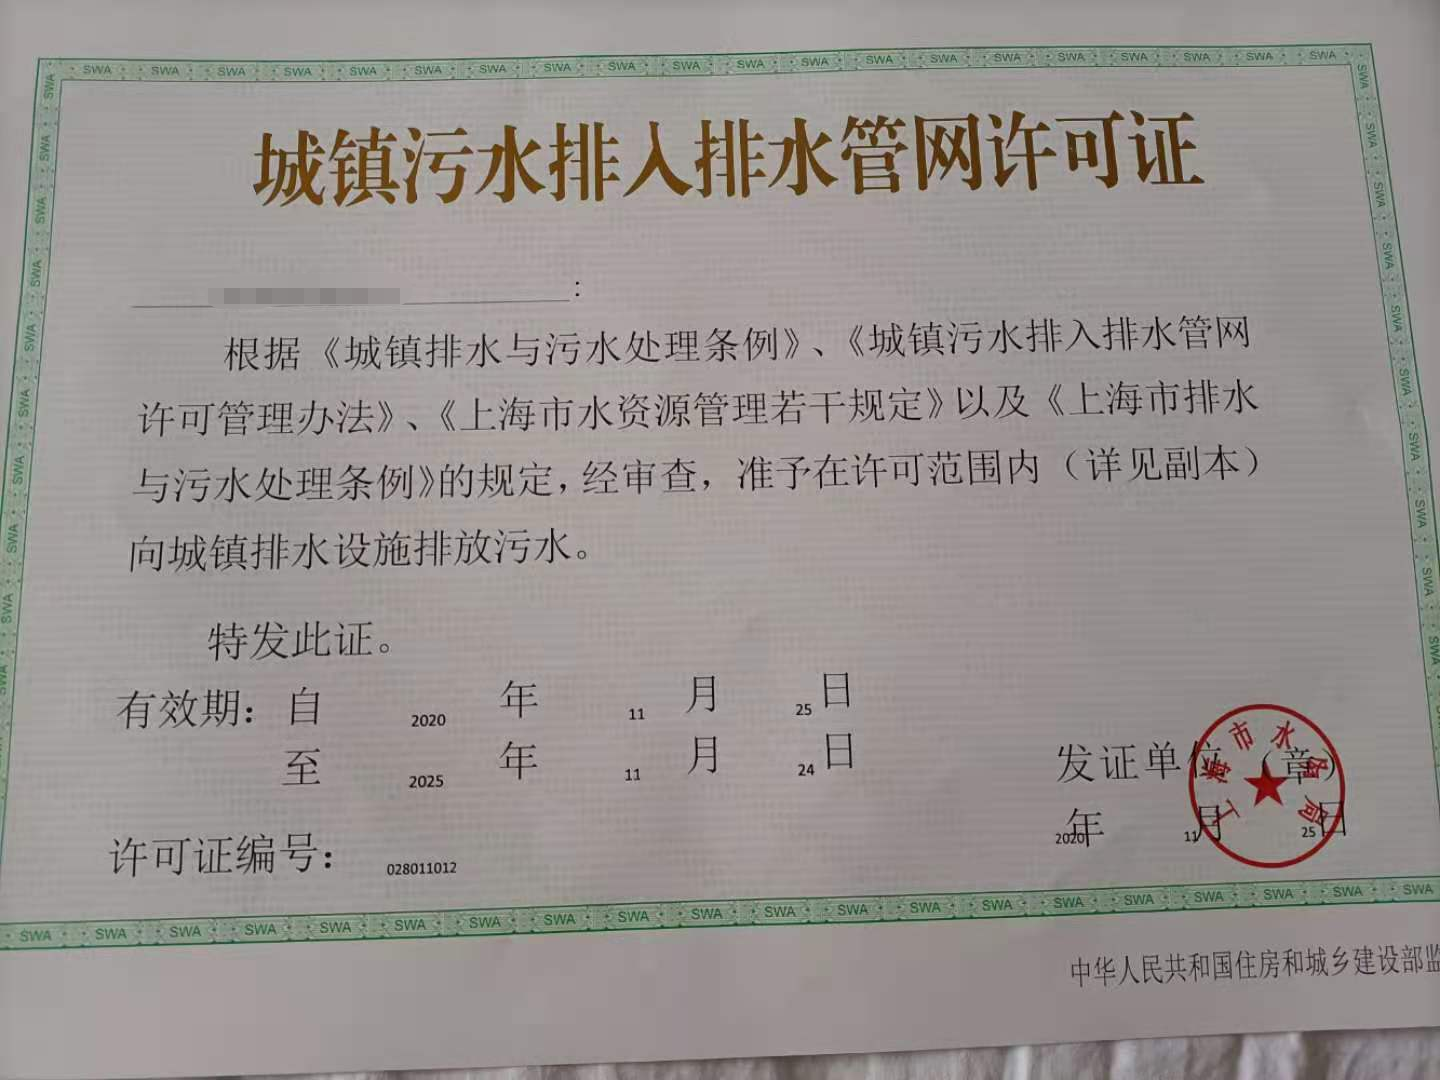 上海代办排水证 上海排水证代办一般需要多少钱